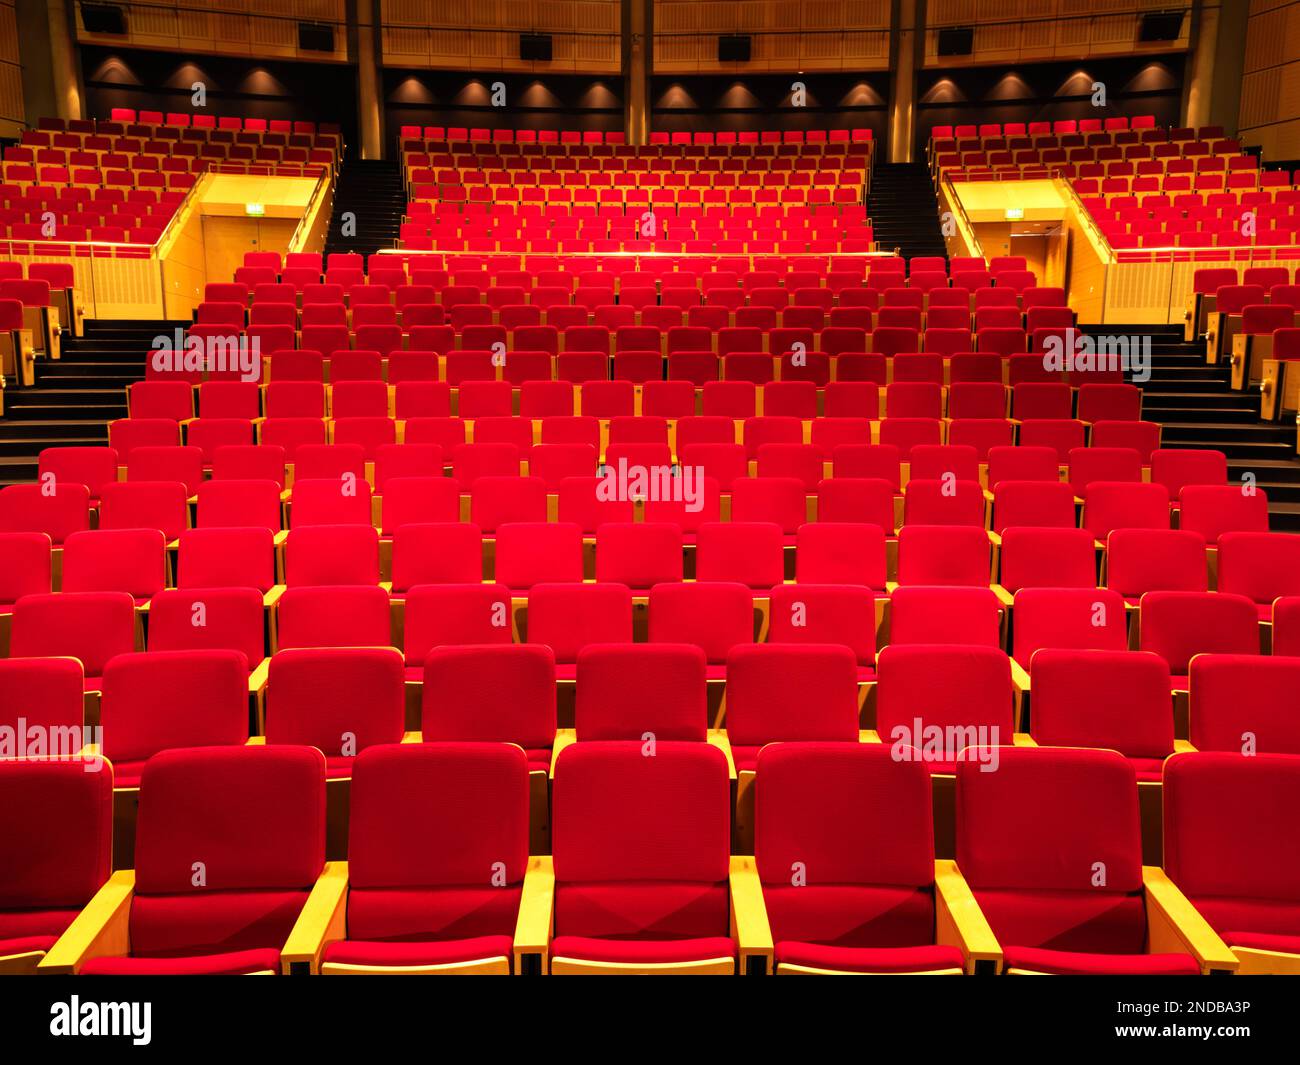 Royaume-Uni, Manchester, rangées de sièges rouges vides dans un auditorium Banque D'Images